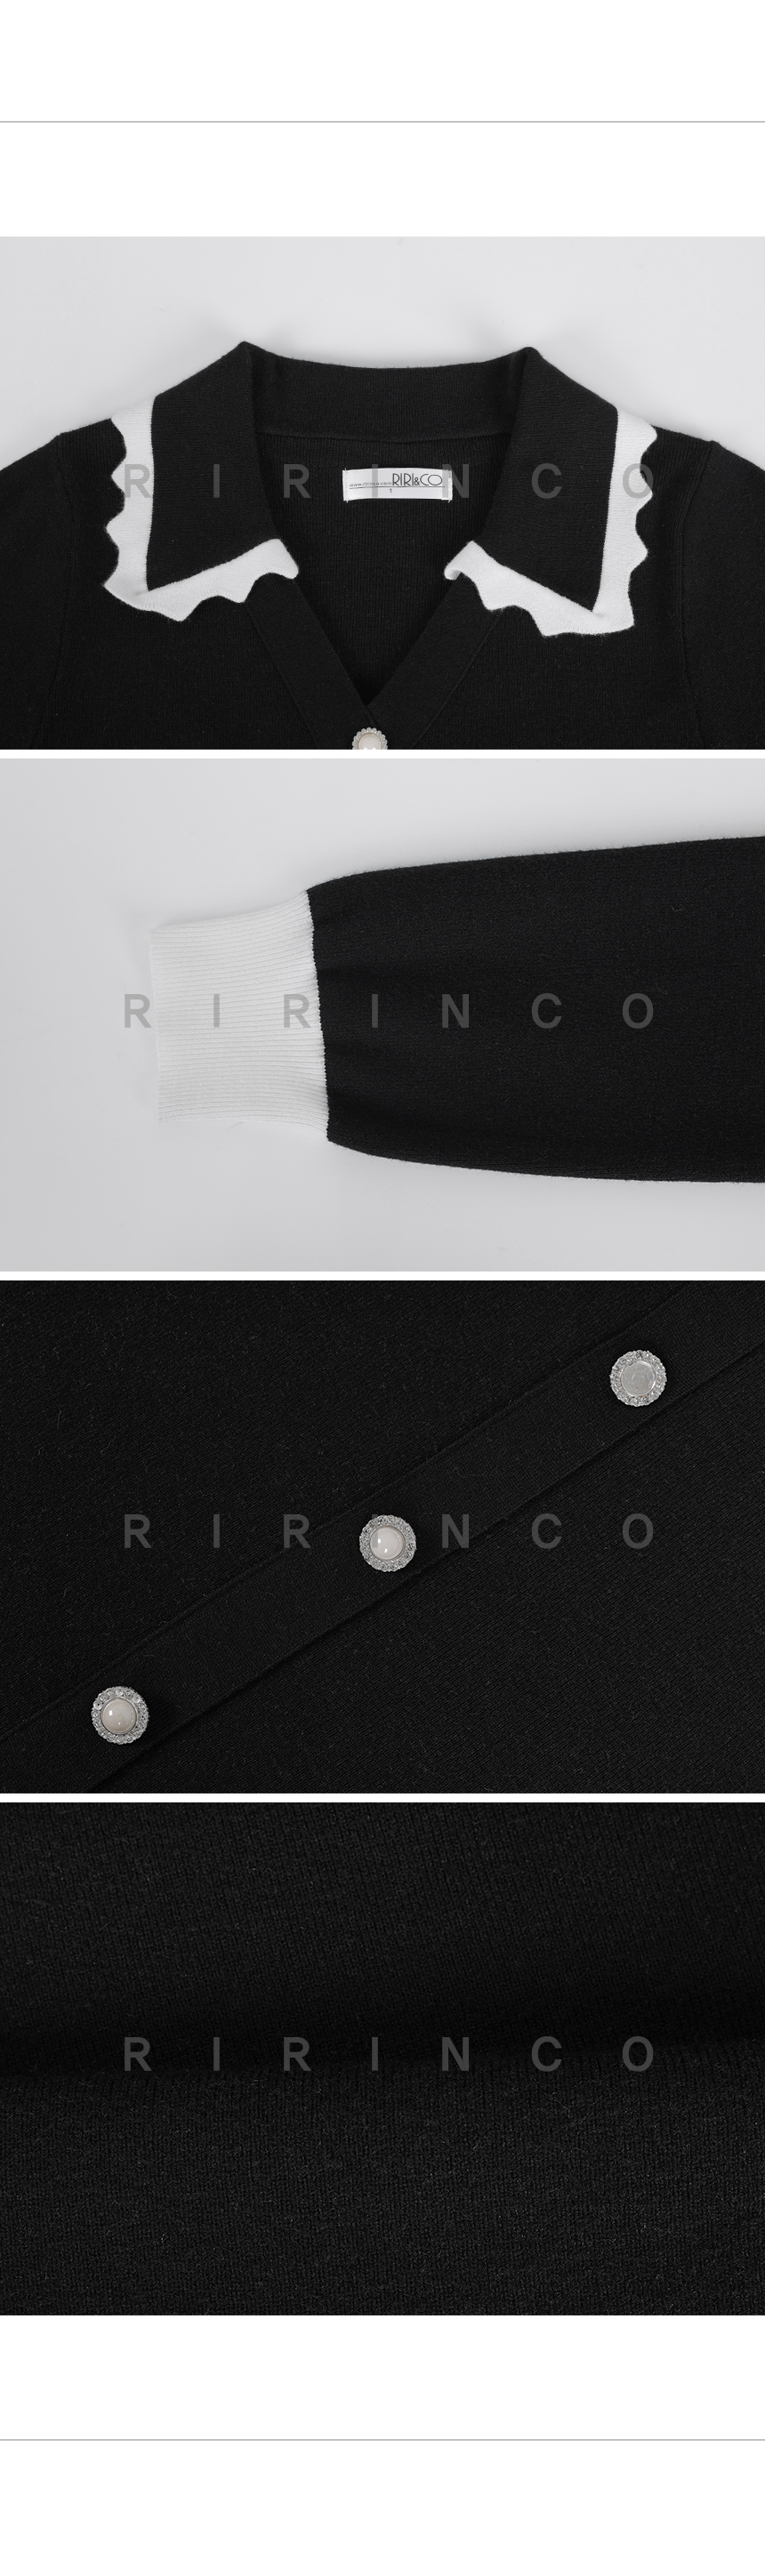 RIRINCO 配色カラーネックミニニットワンピース